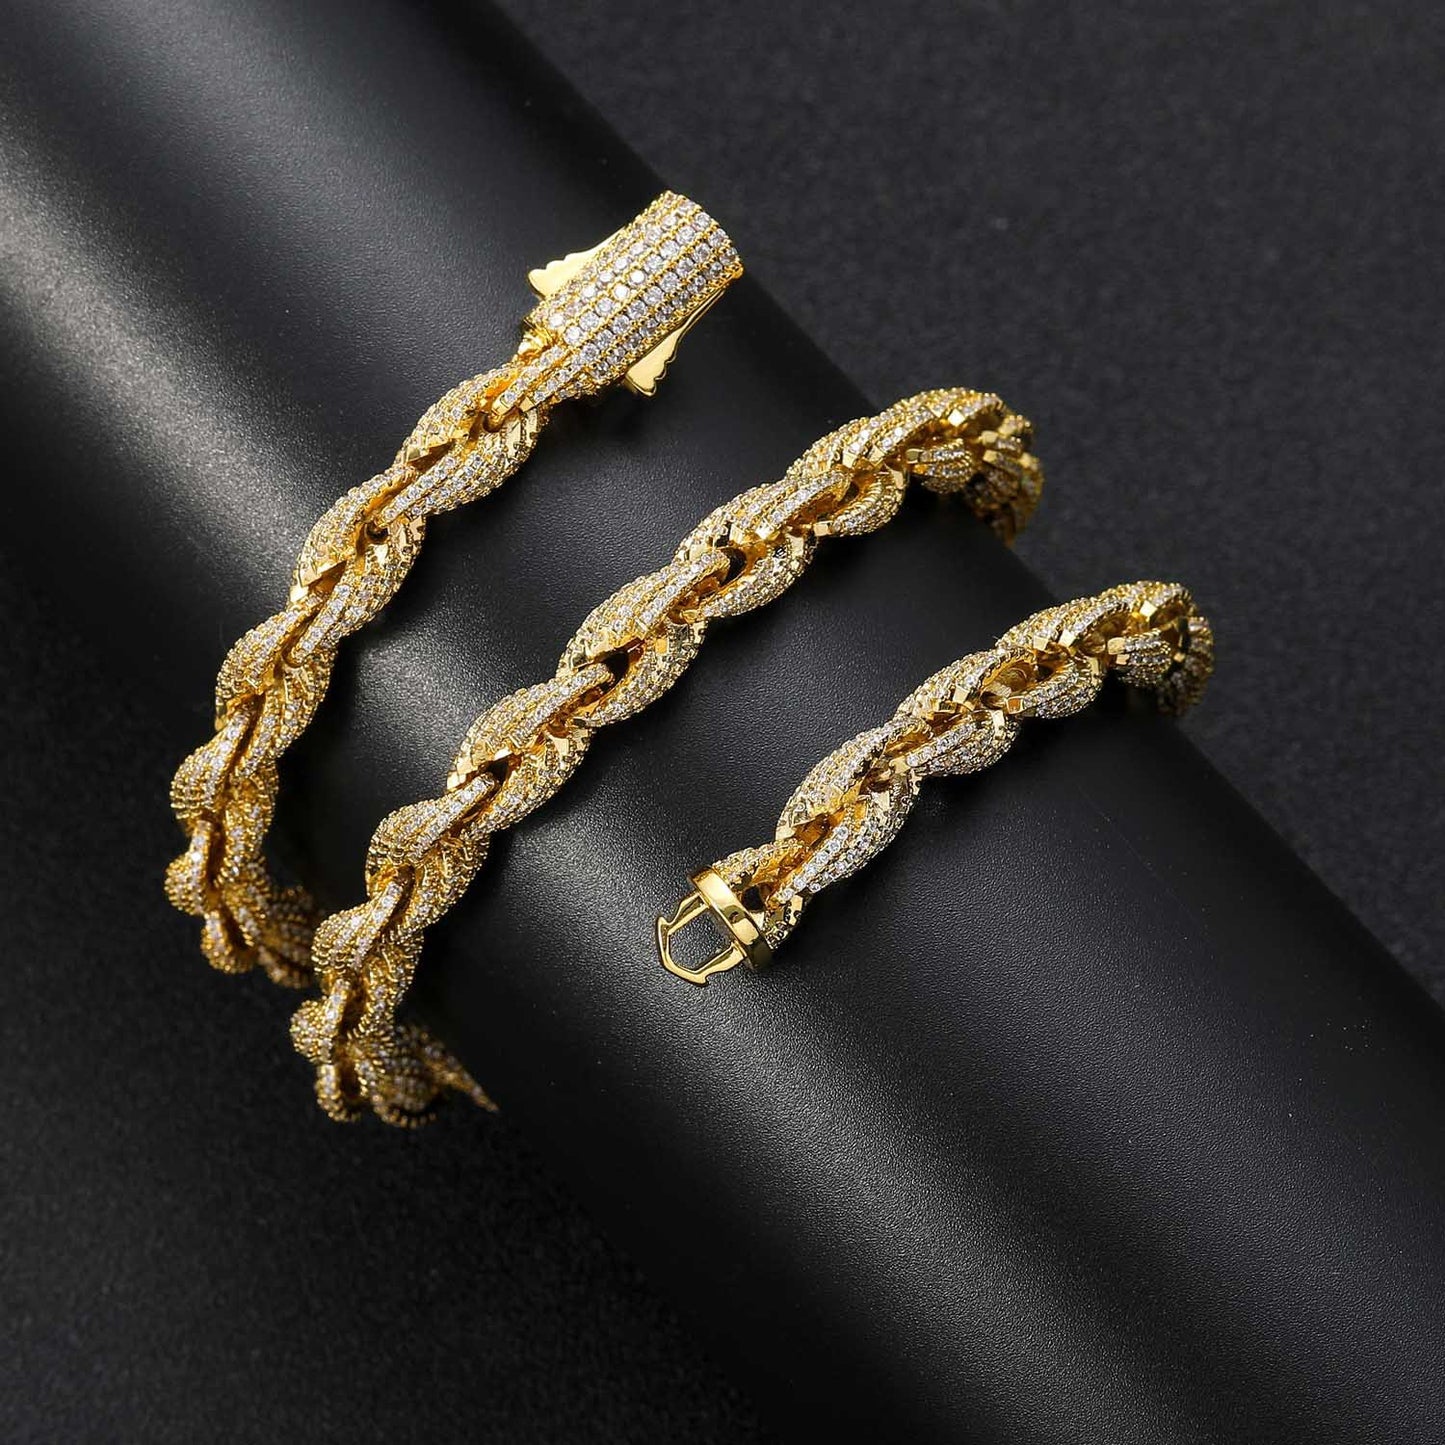 European American Hip Hop Bracelet Men Full Zircon 8mm Twist Chain Rope Chain Hiphop Men Bracelet ewelry